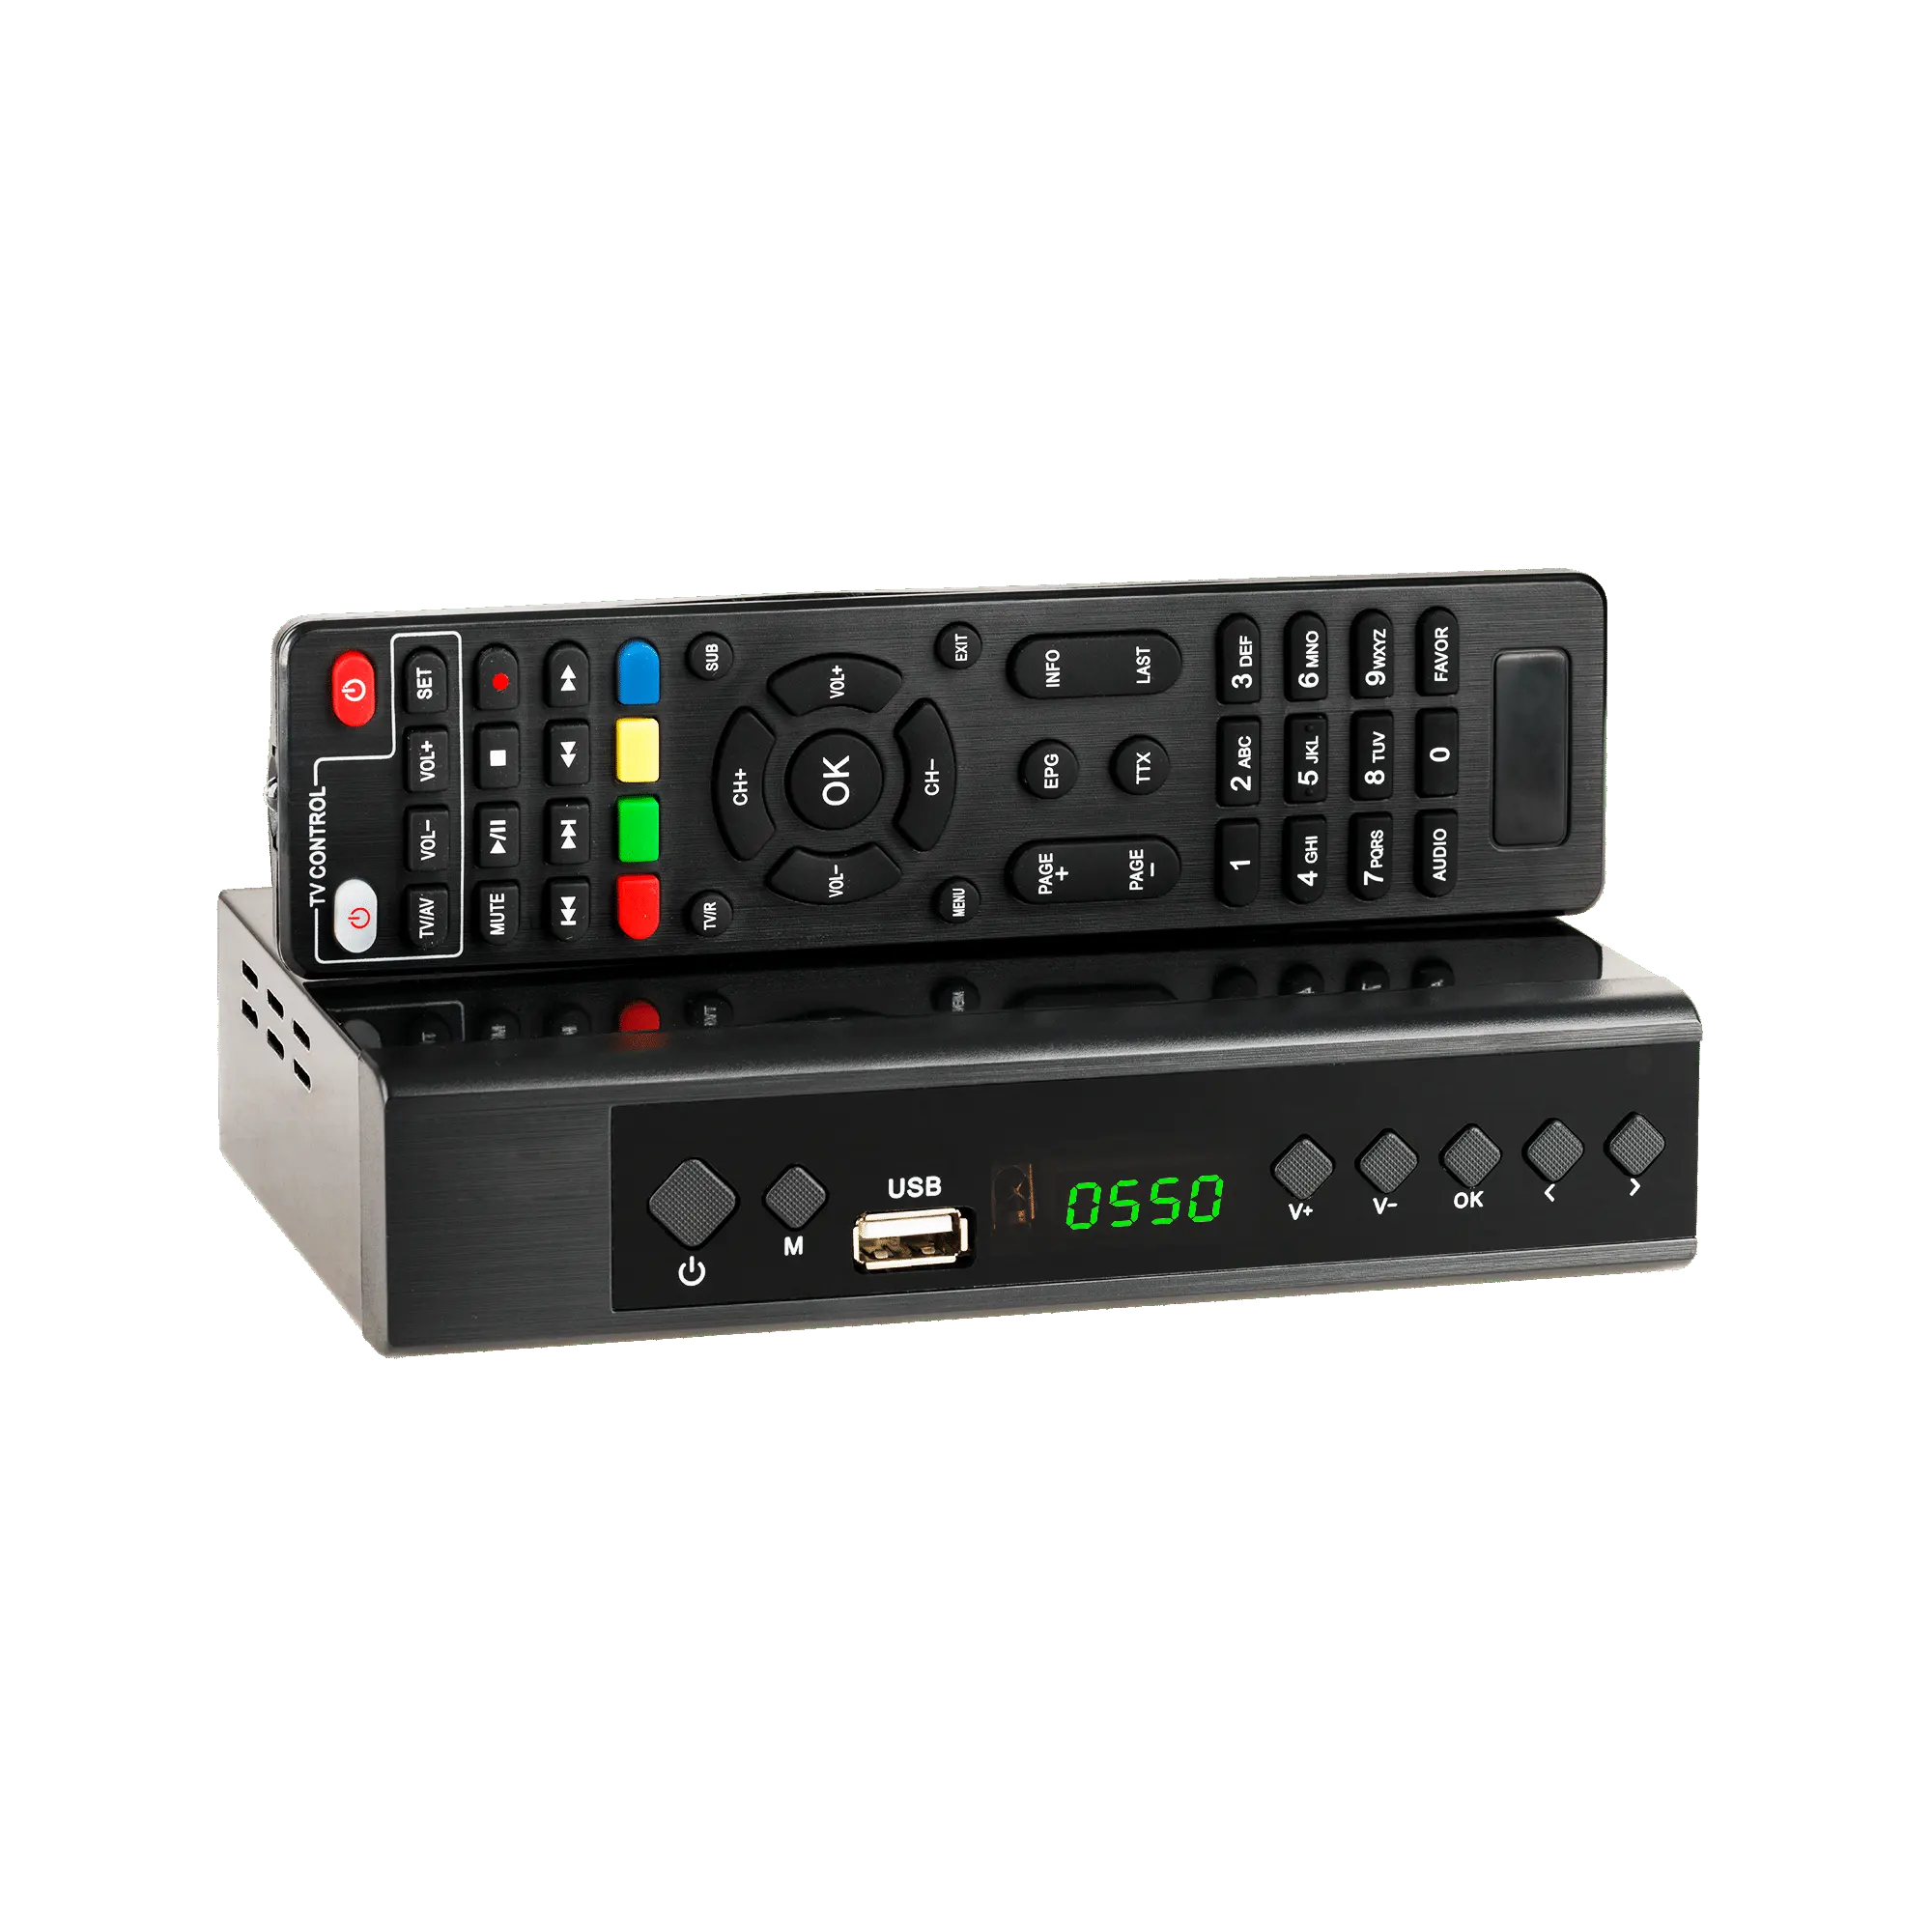 Nouveau modèle isdb-t brésil décodeur support youtube isdbt mpeg4 hd décodeur isdb-t tv numérique décodeur tvbox